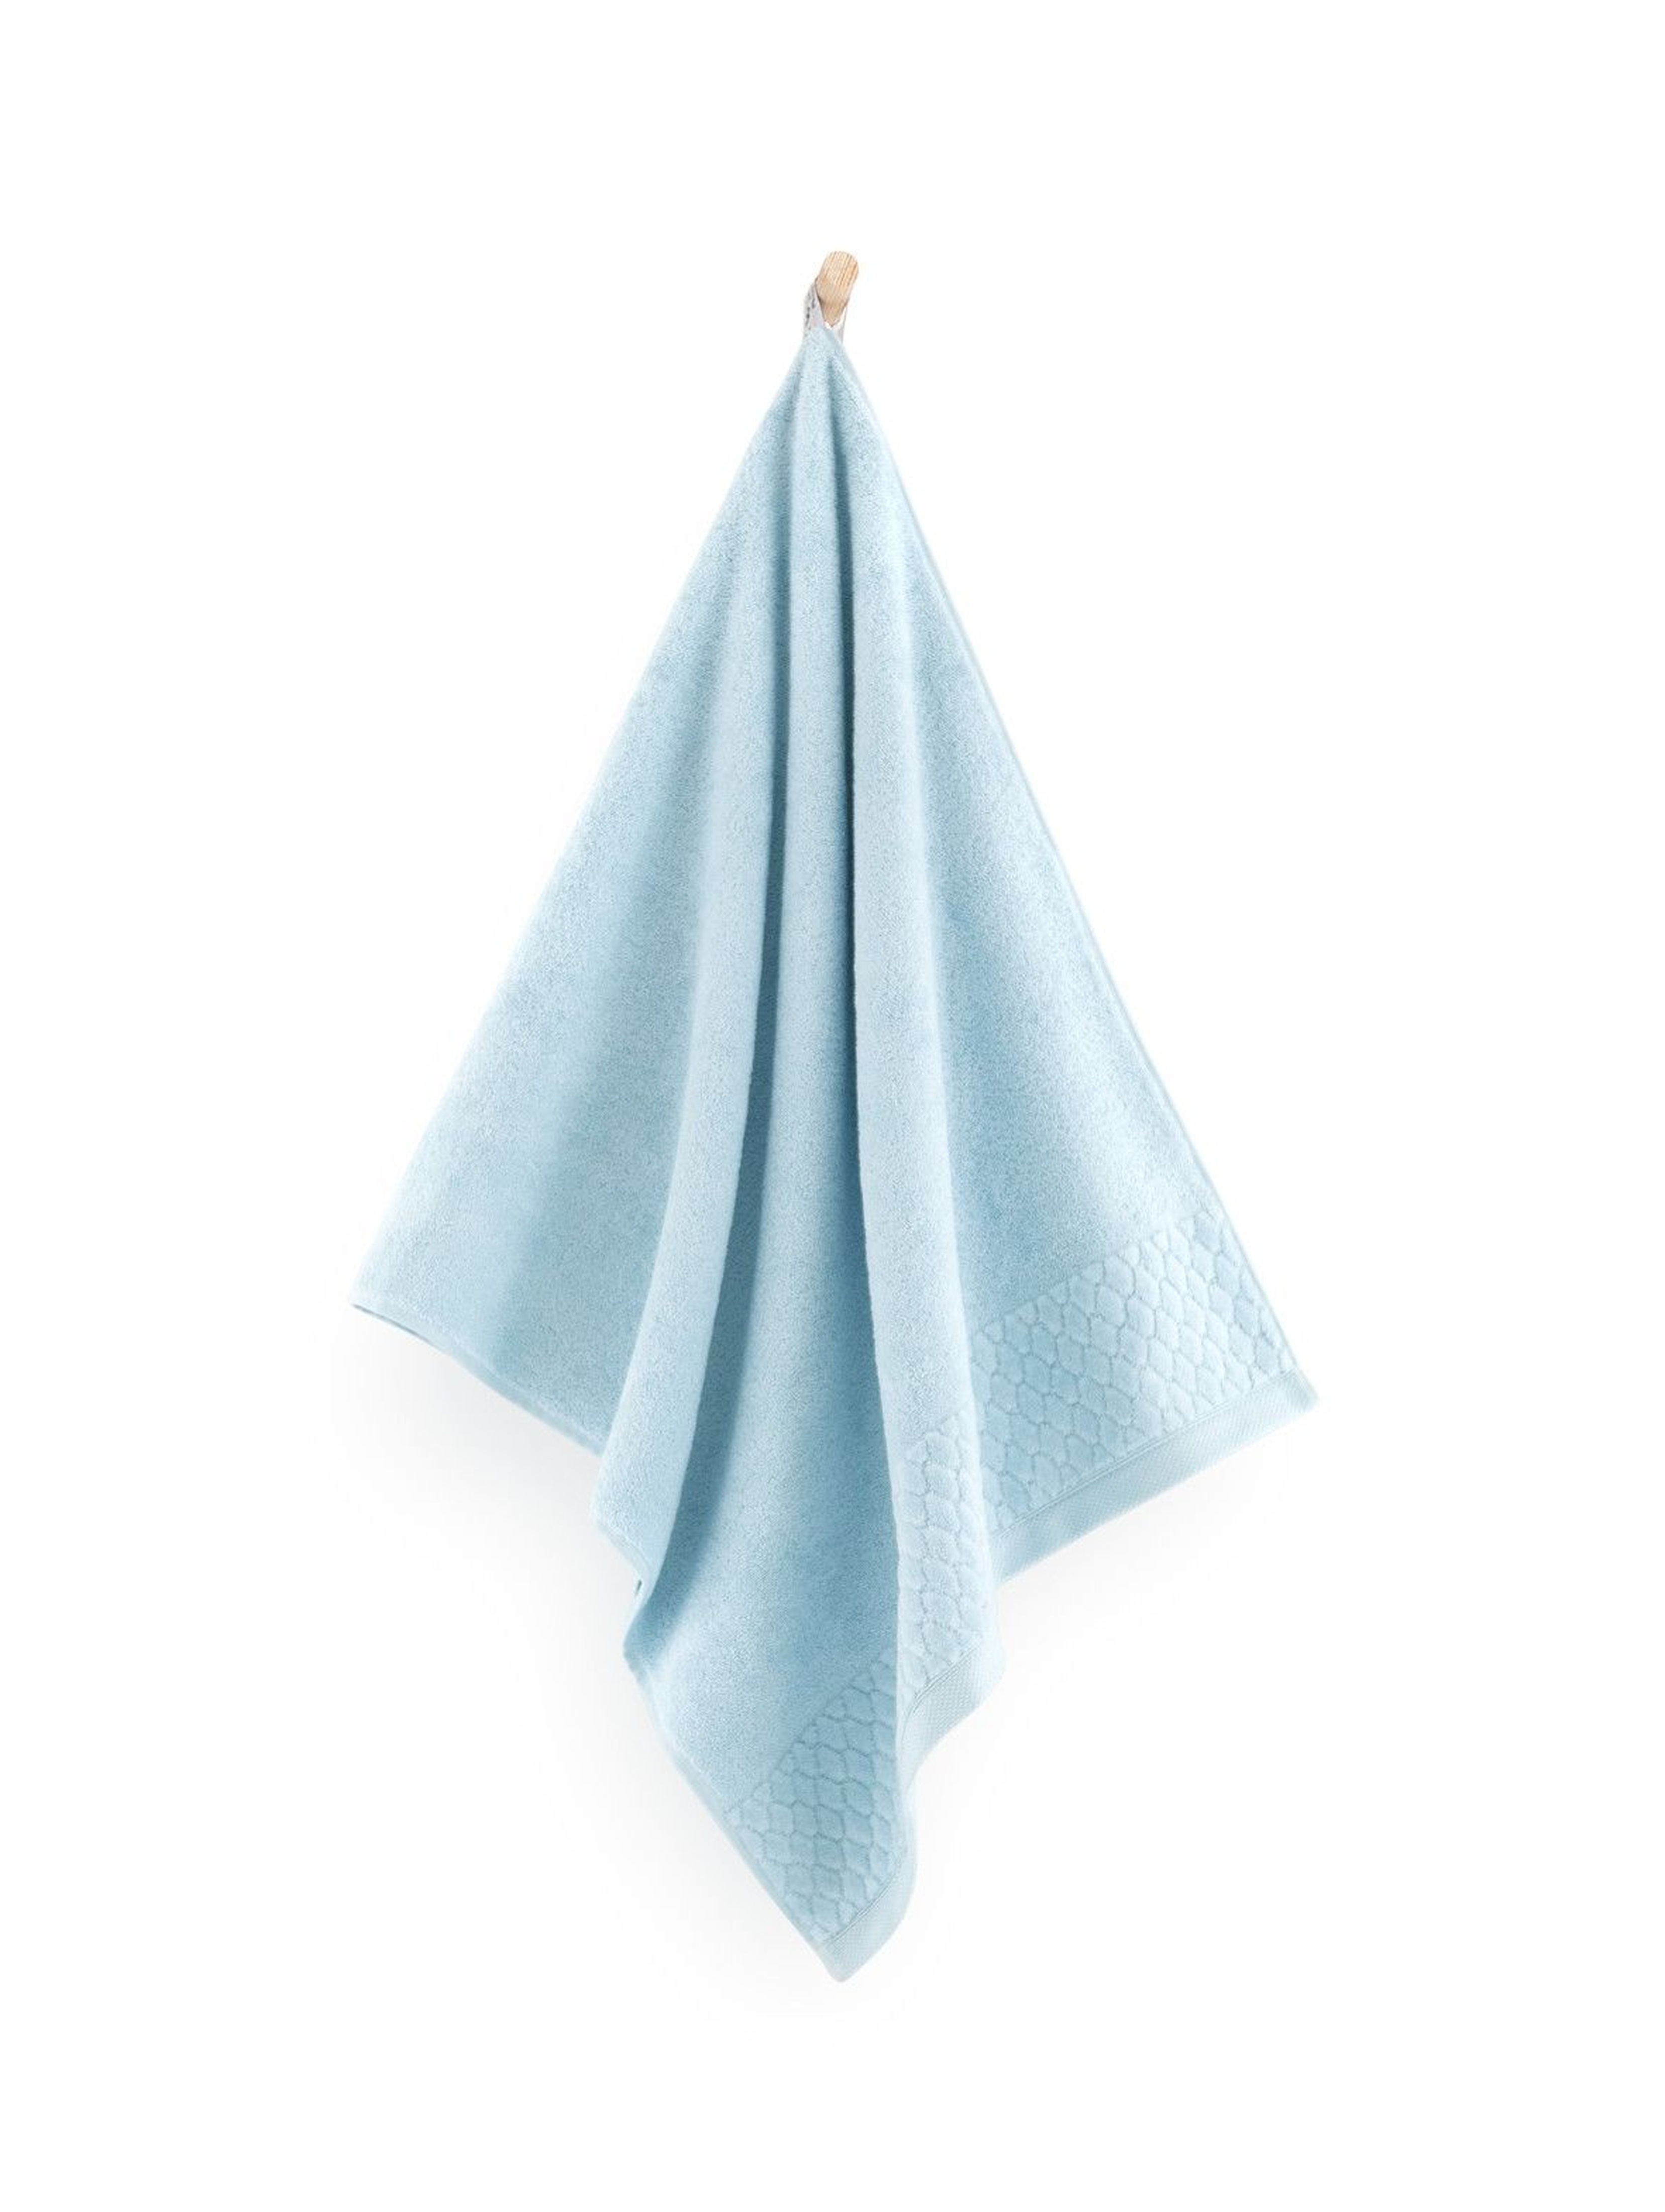 Ręcznik antybakteryjny Carlo z bawełny egipskiej świetlik- 2pack 30x50cm